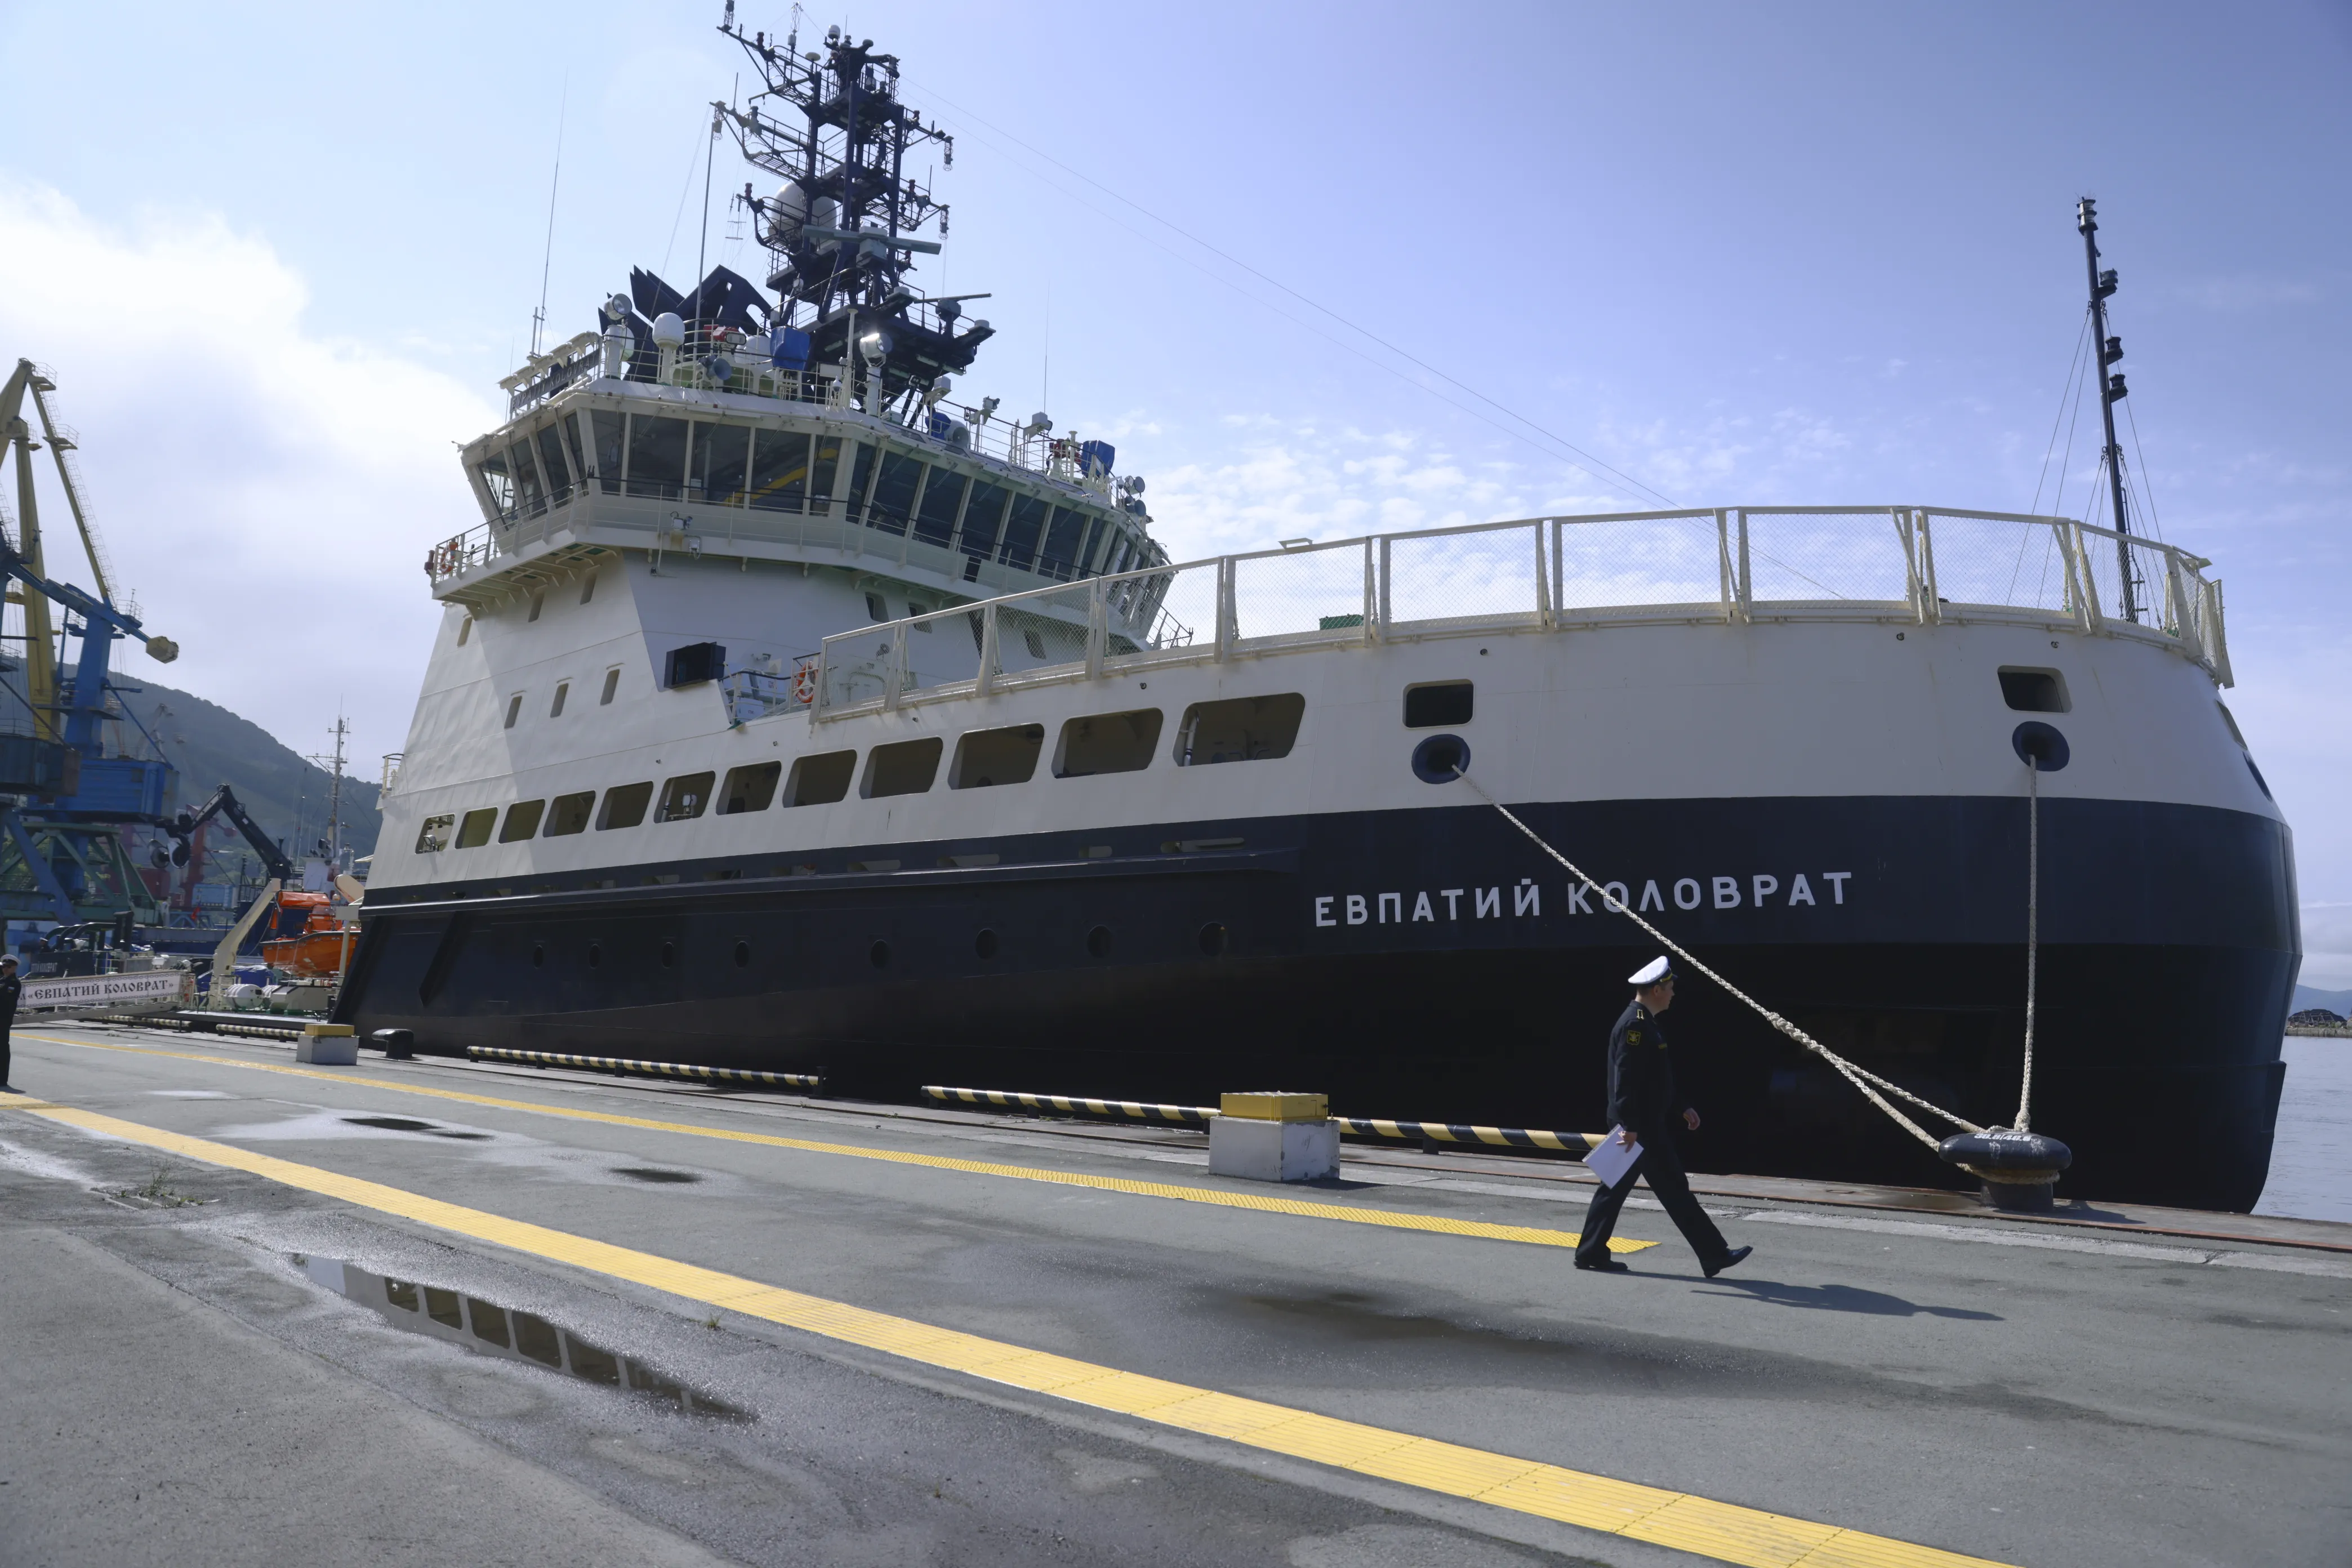 На Камчатке новейший ледокол "Евпатий Коловрат" приняли в состав ВМФ